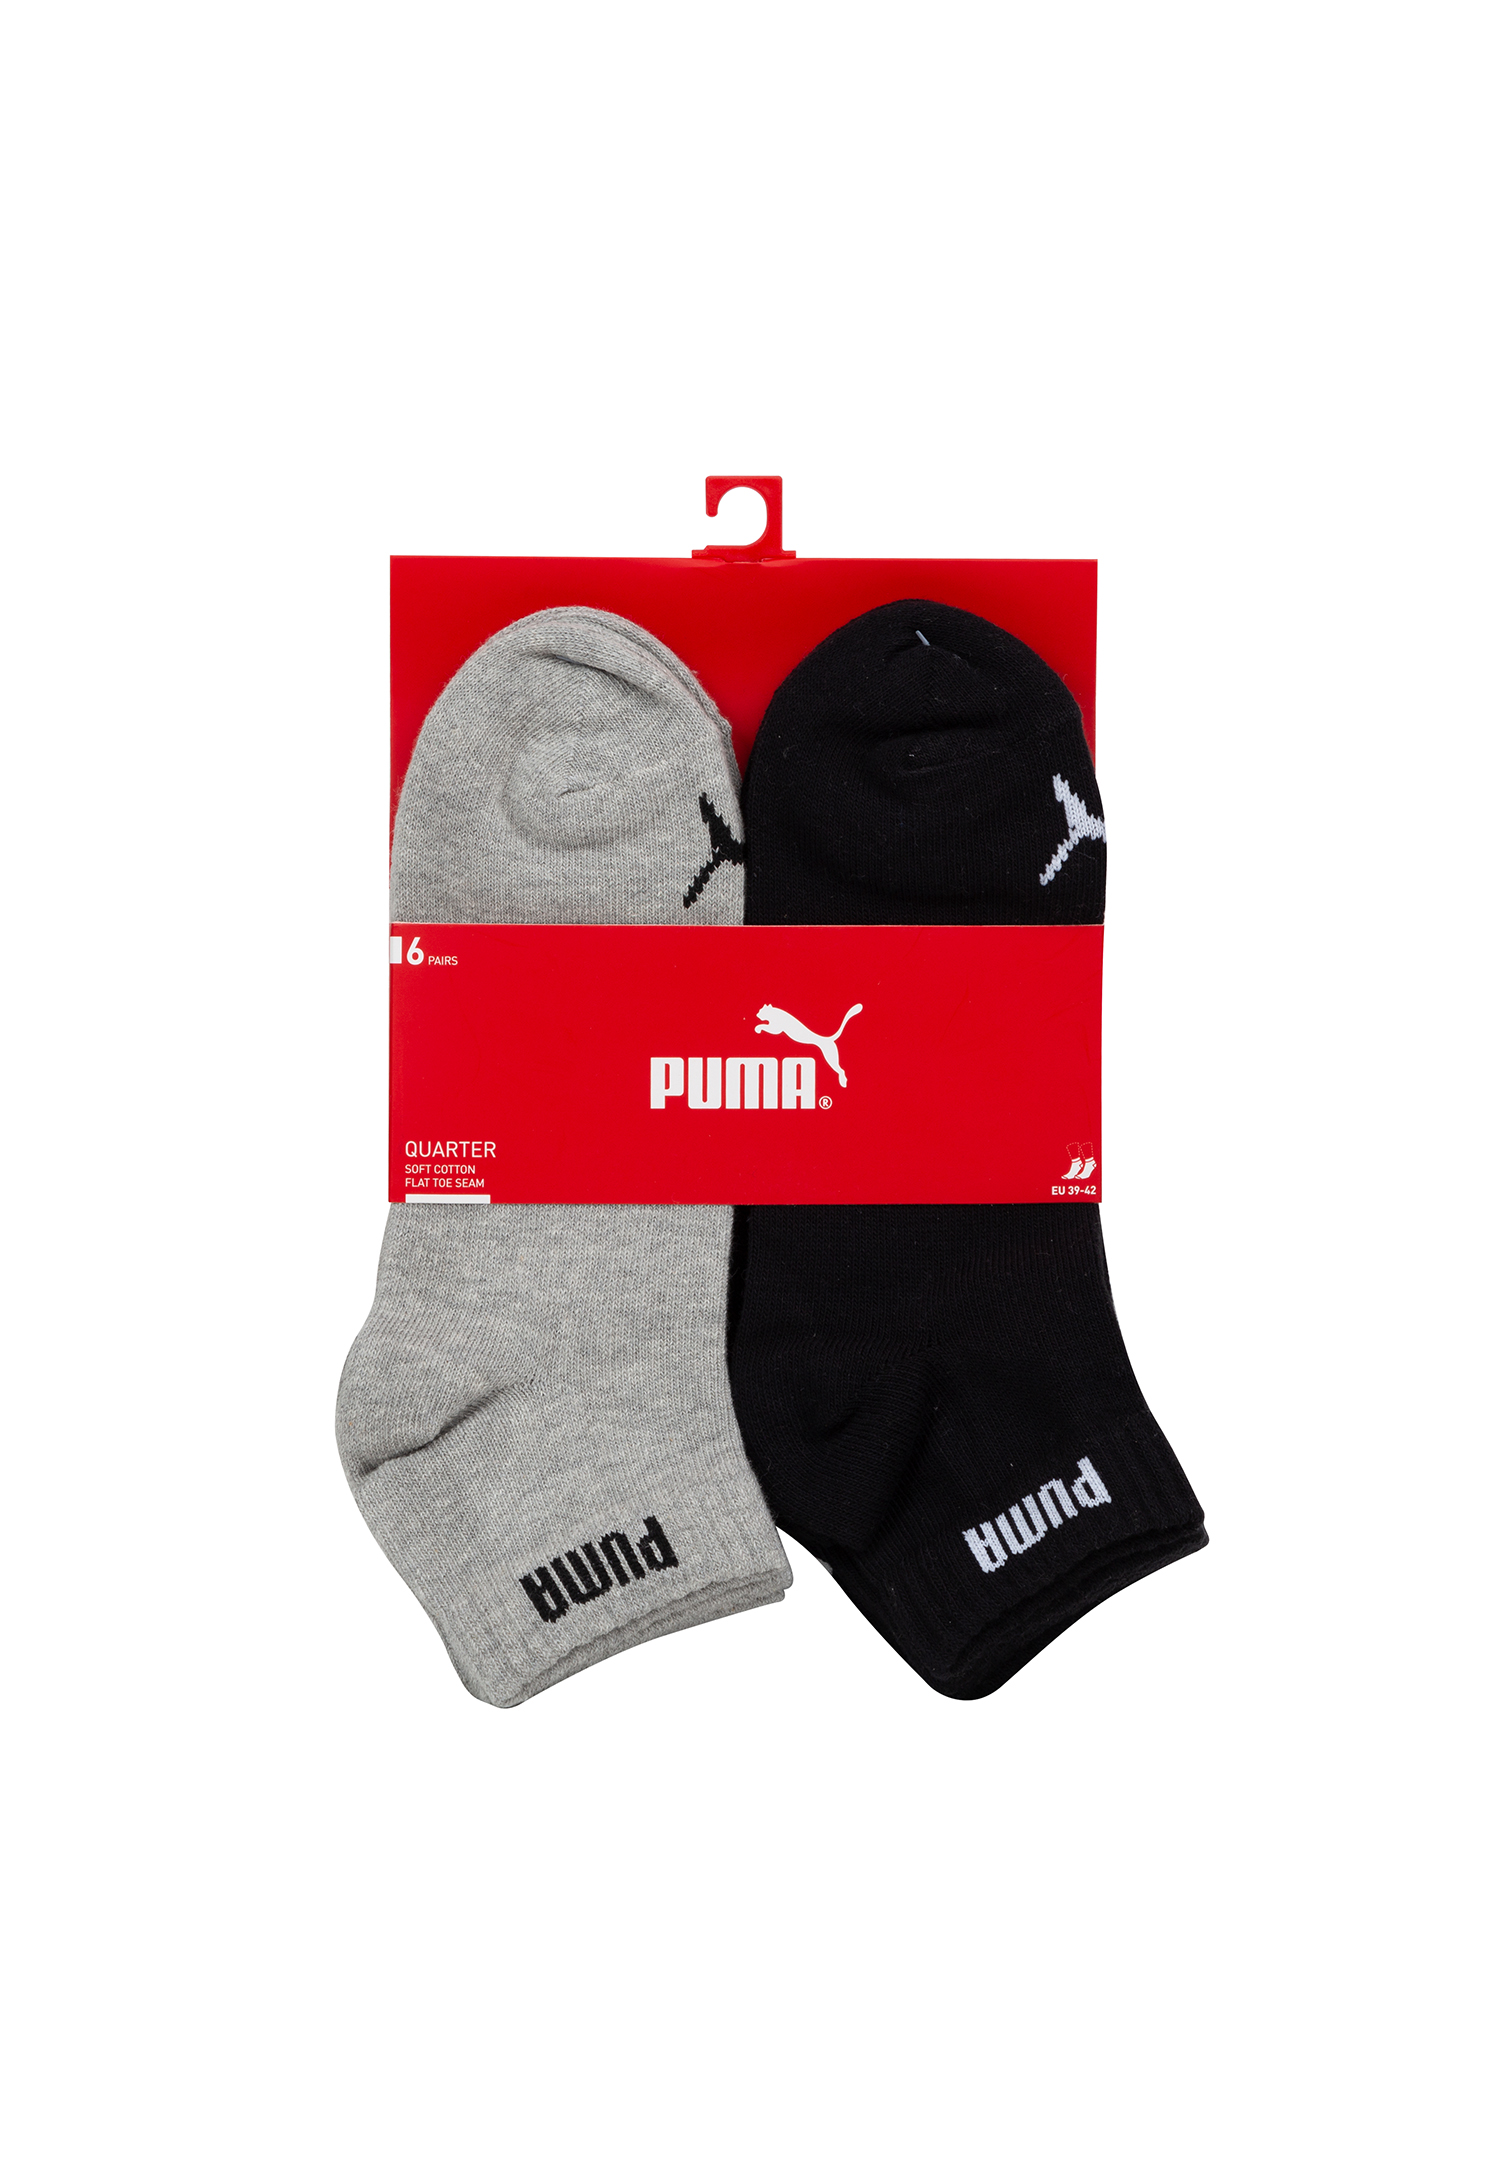 Puma Unisex Quarter Socken Sneaker knöchelhoch für Damen Herren 12er Pack